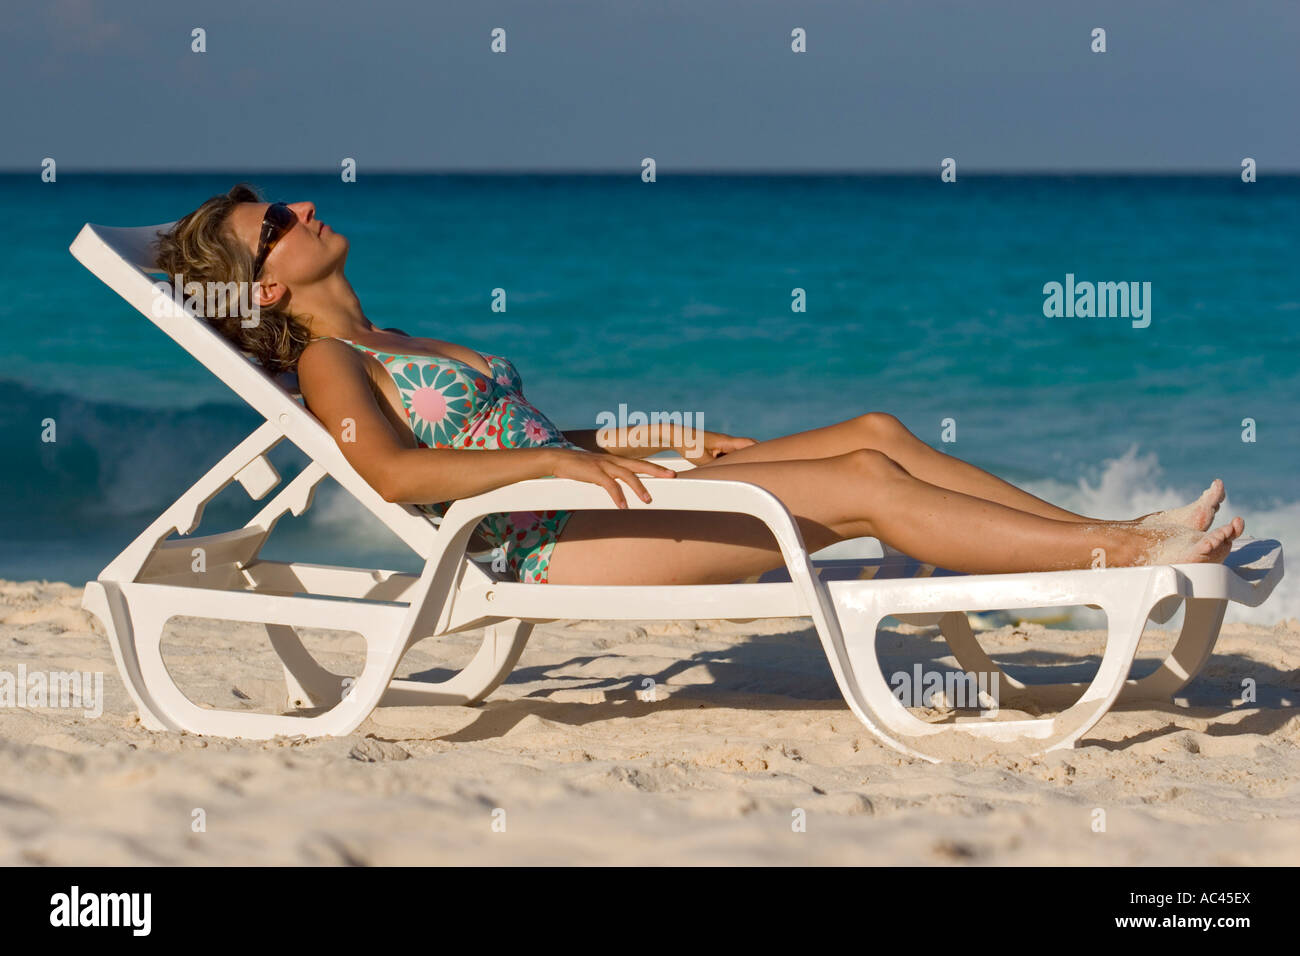 A young Lady sunbathing on a Cancún beach (Mexico). Jeune femme prenant un bain de soleil sur la plage de Cancún (Mexique). Stock Photo